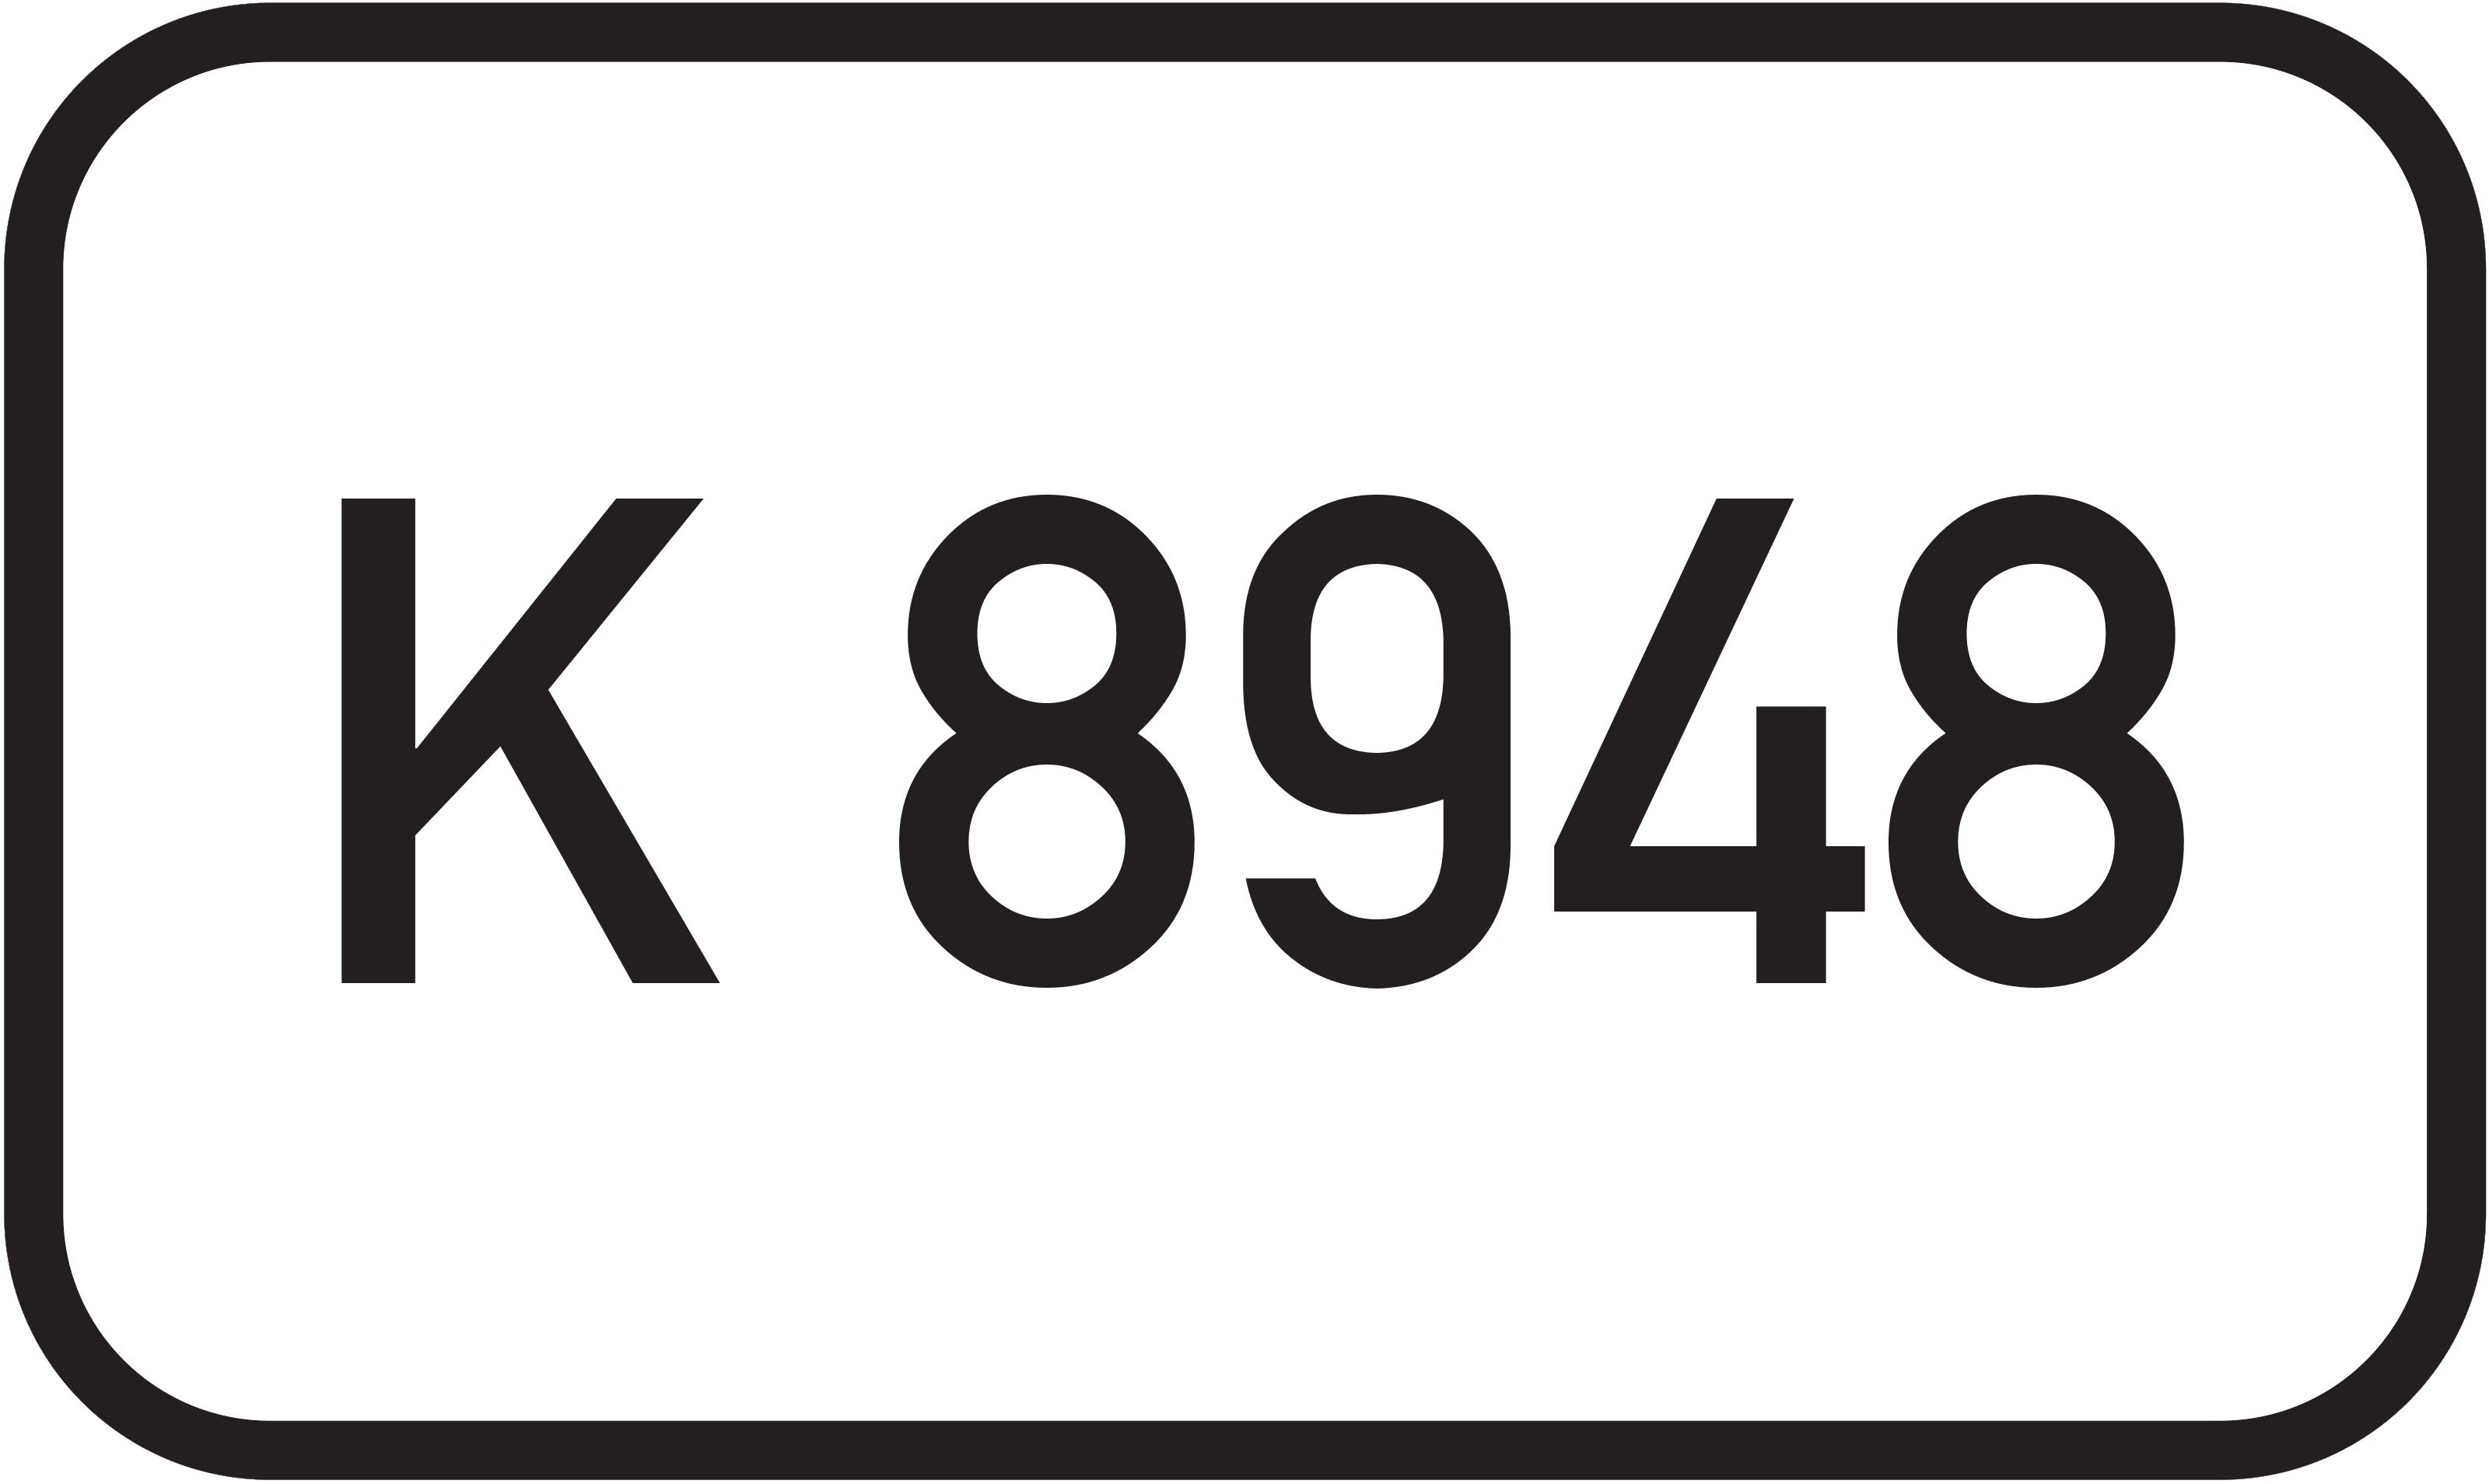 Bundesstraße K 8948